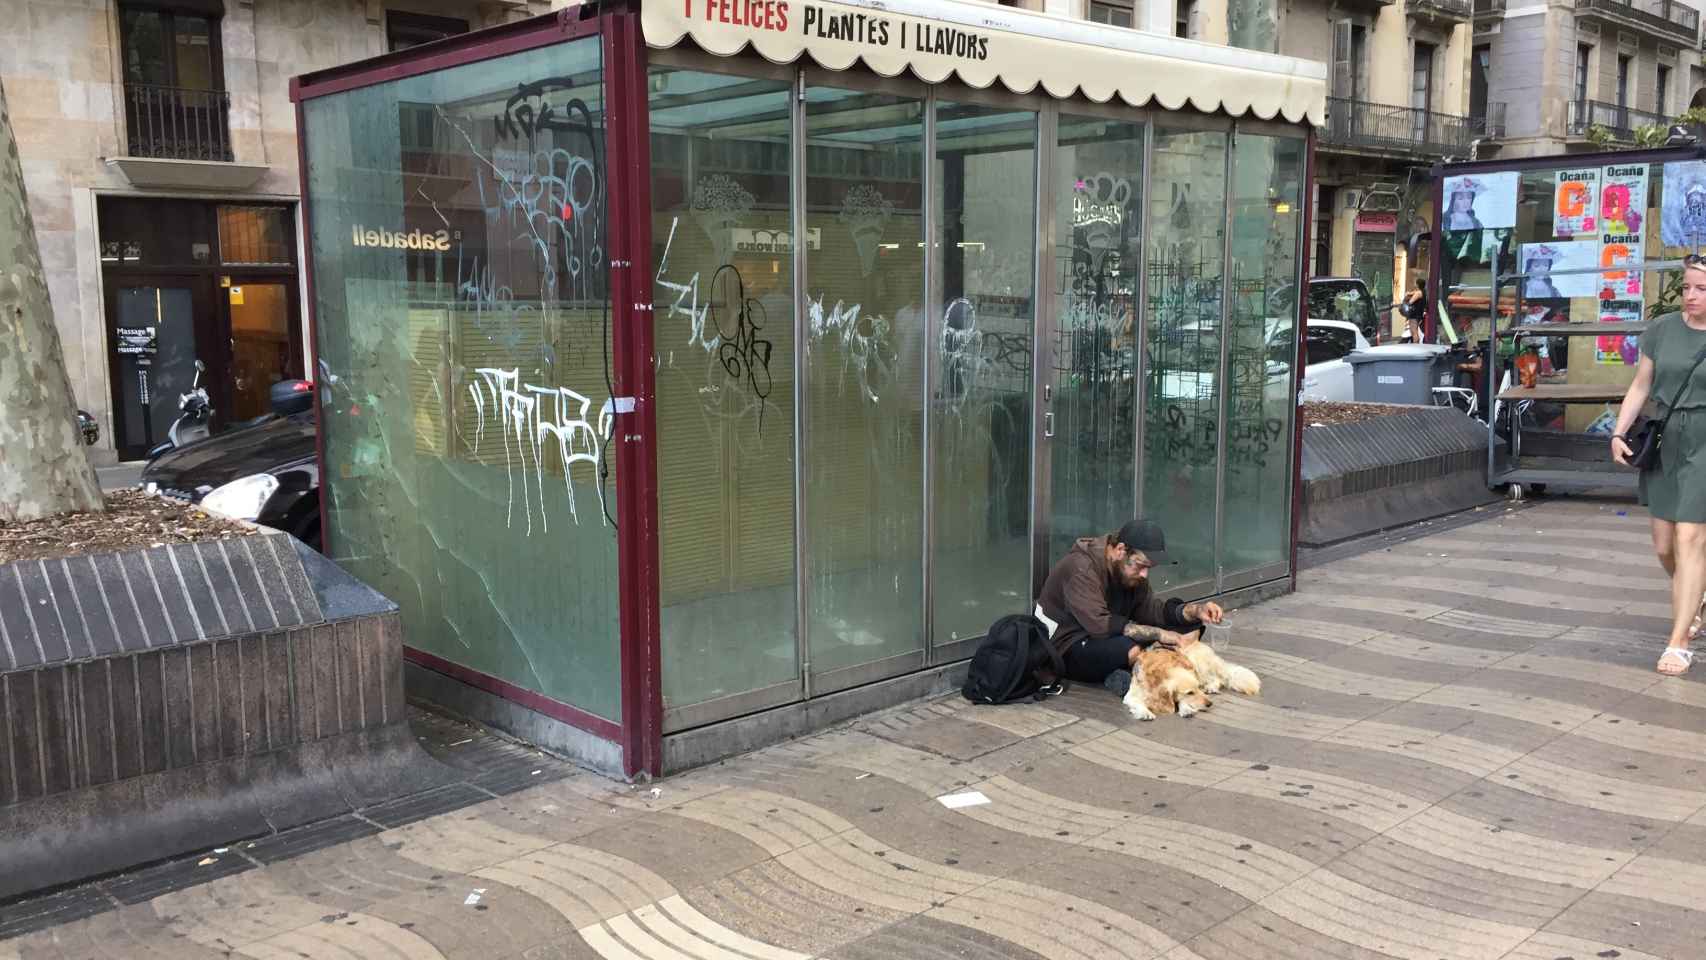 La floristería Felices fue cerrada por sus propietarios tras el atentado